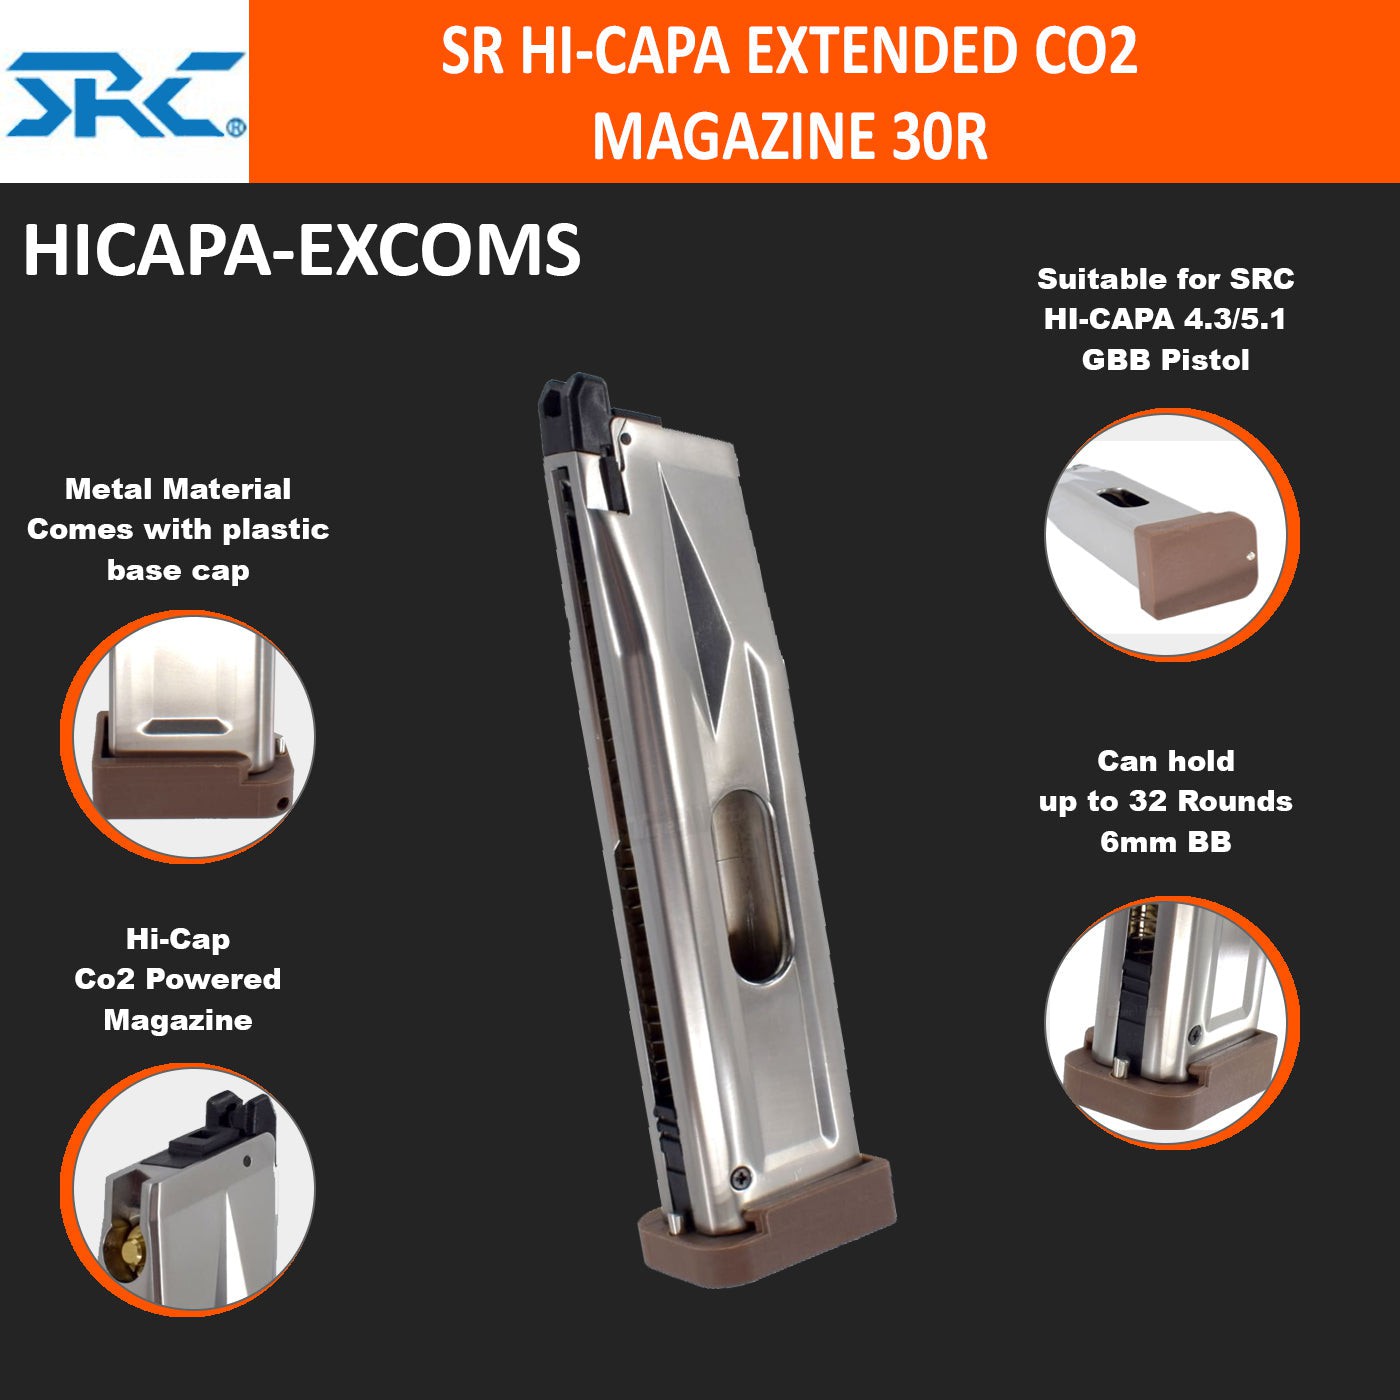 SRC SR HI-CAPA EXTENDED CO2 MAGAZINE 30R